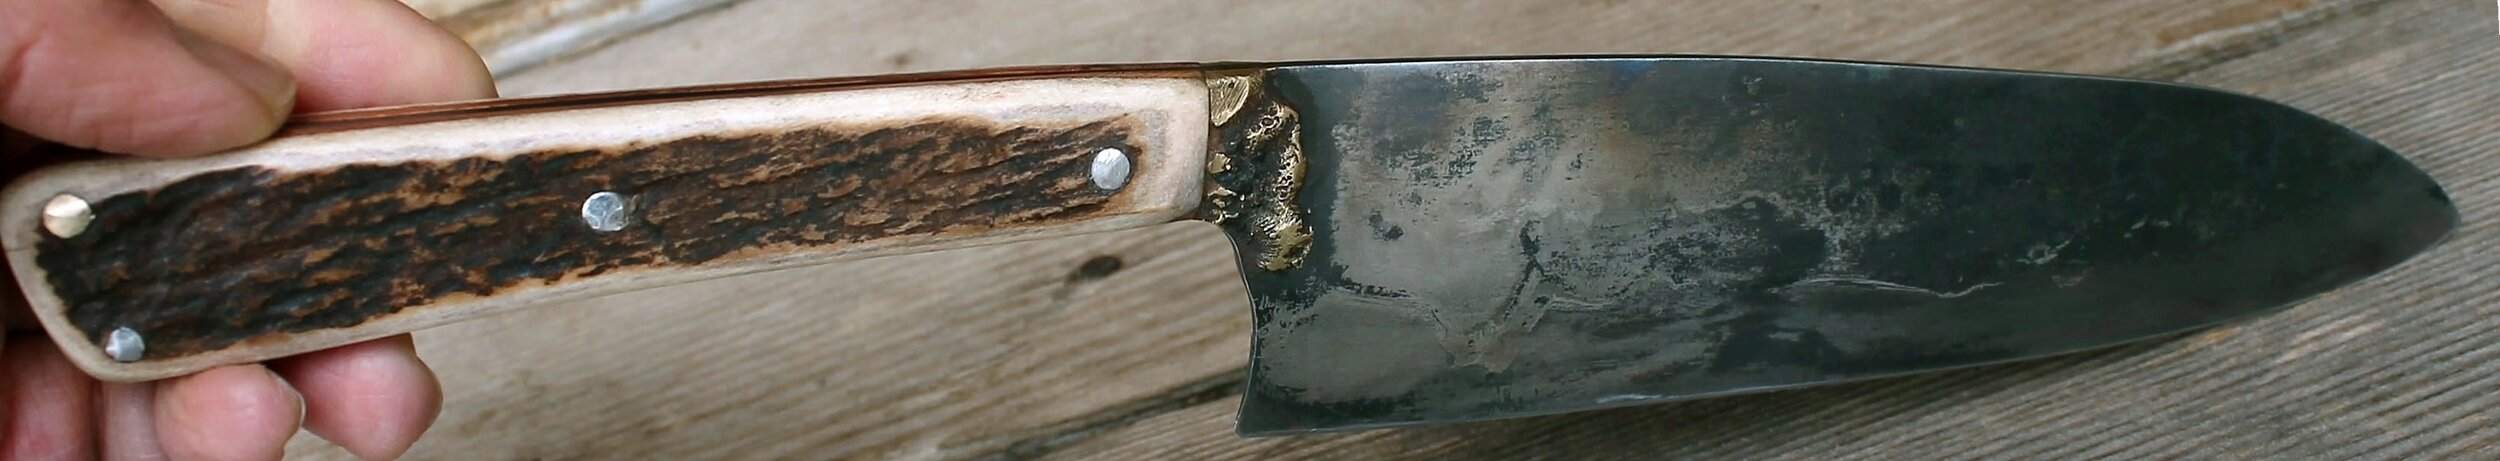 kitchen knife slicer boreal set.jpg